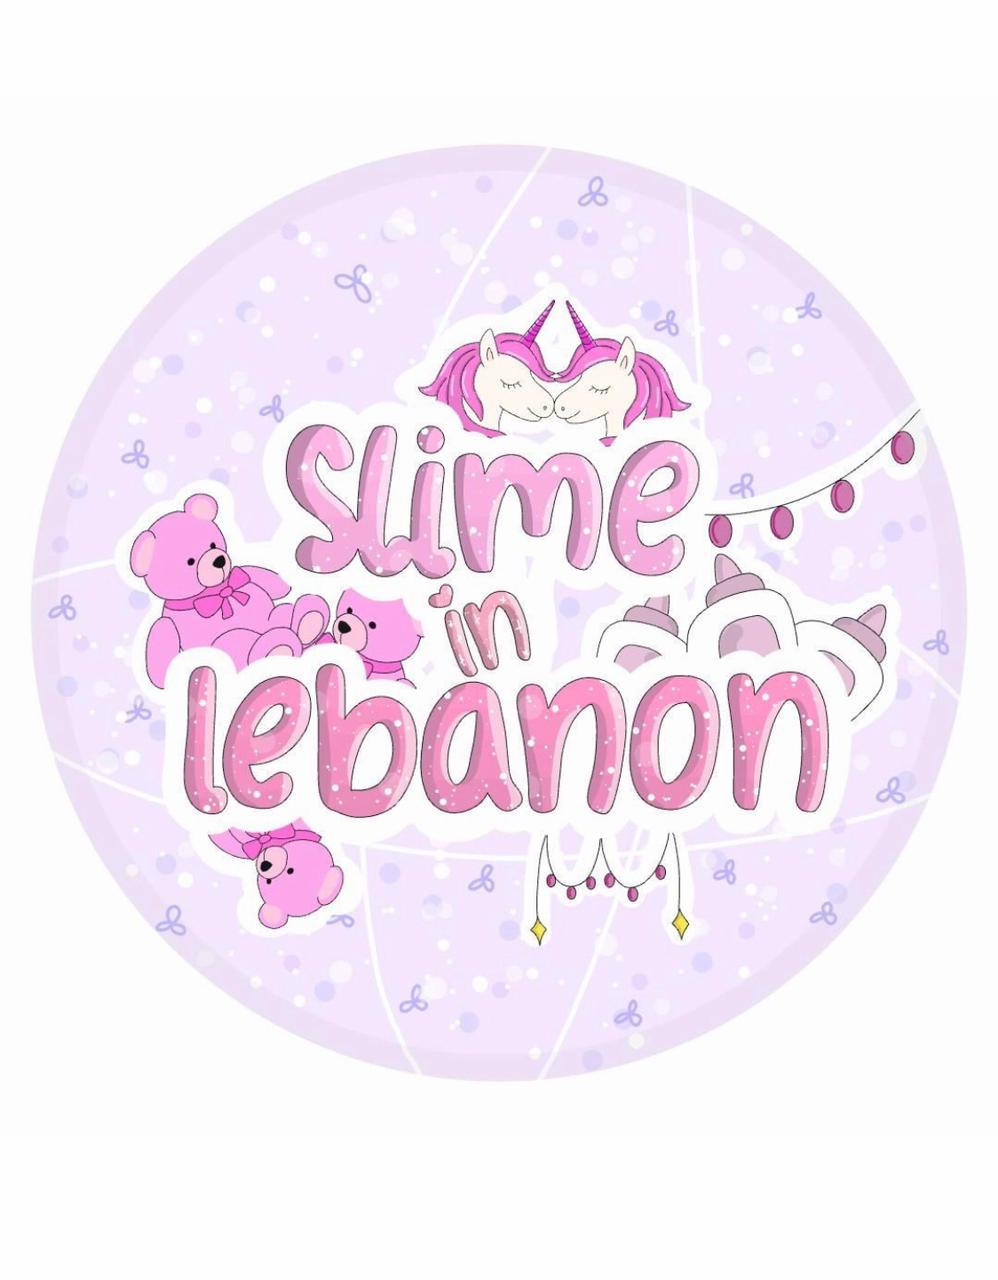 Slime in lebanon